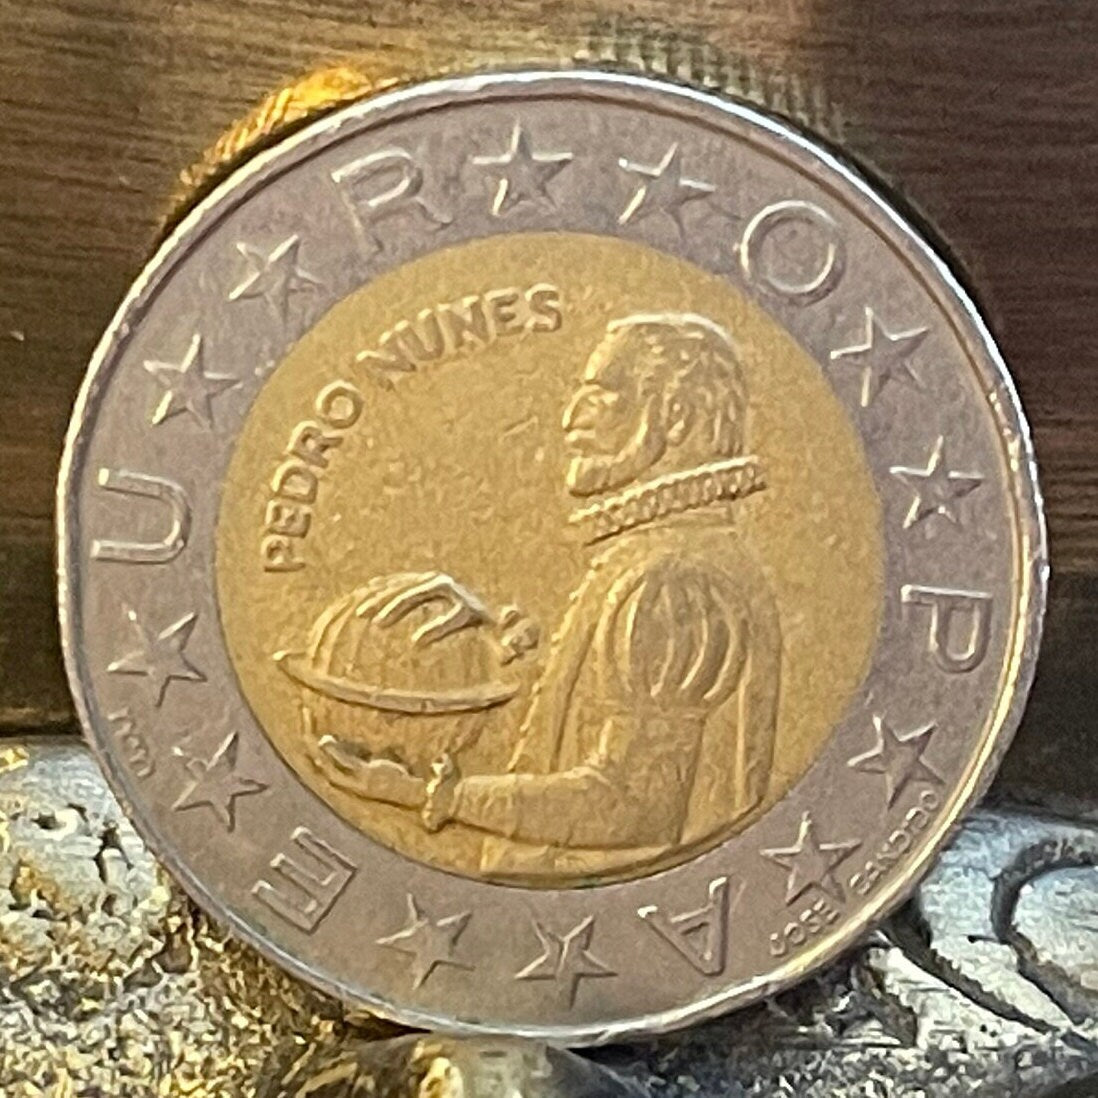 Mathematician Pedro Nunes 100 Escudos Portugal Authentic Coin Money for Jewelry (Nonius) (Loxodrome) (Bimetallic)